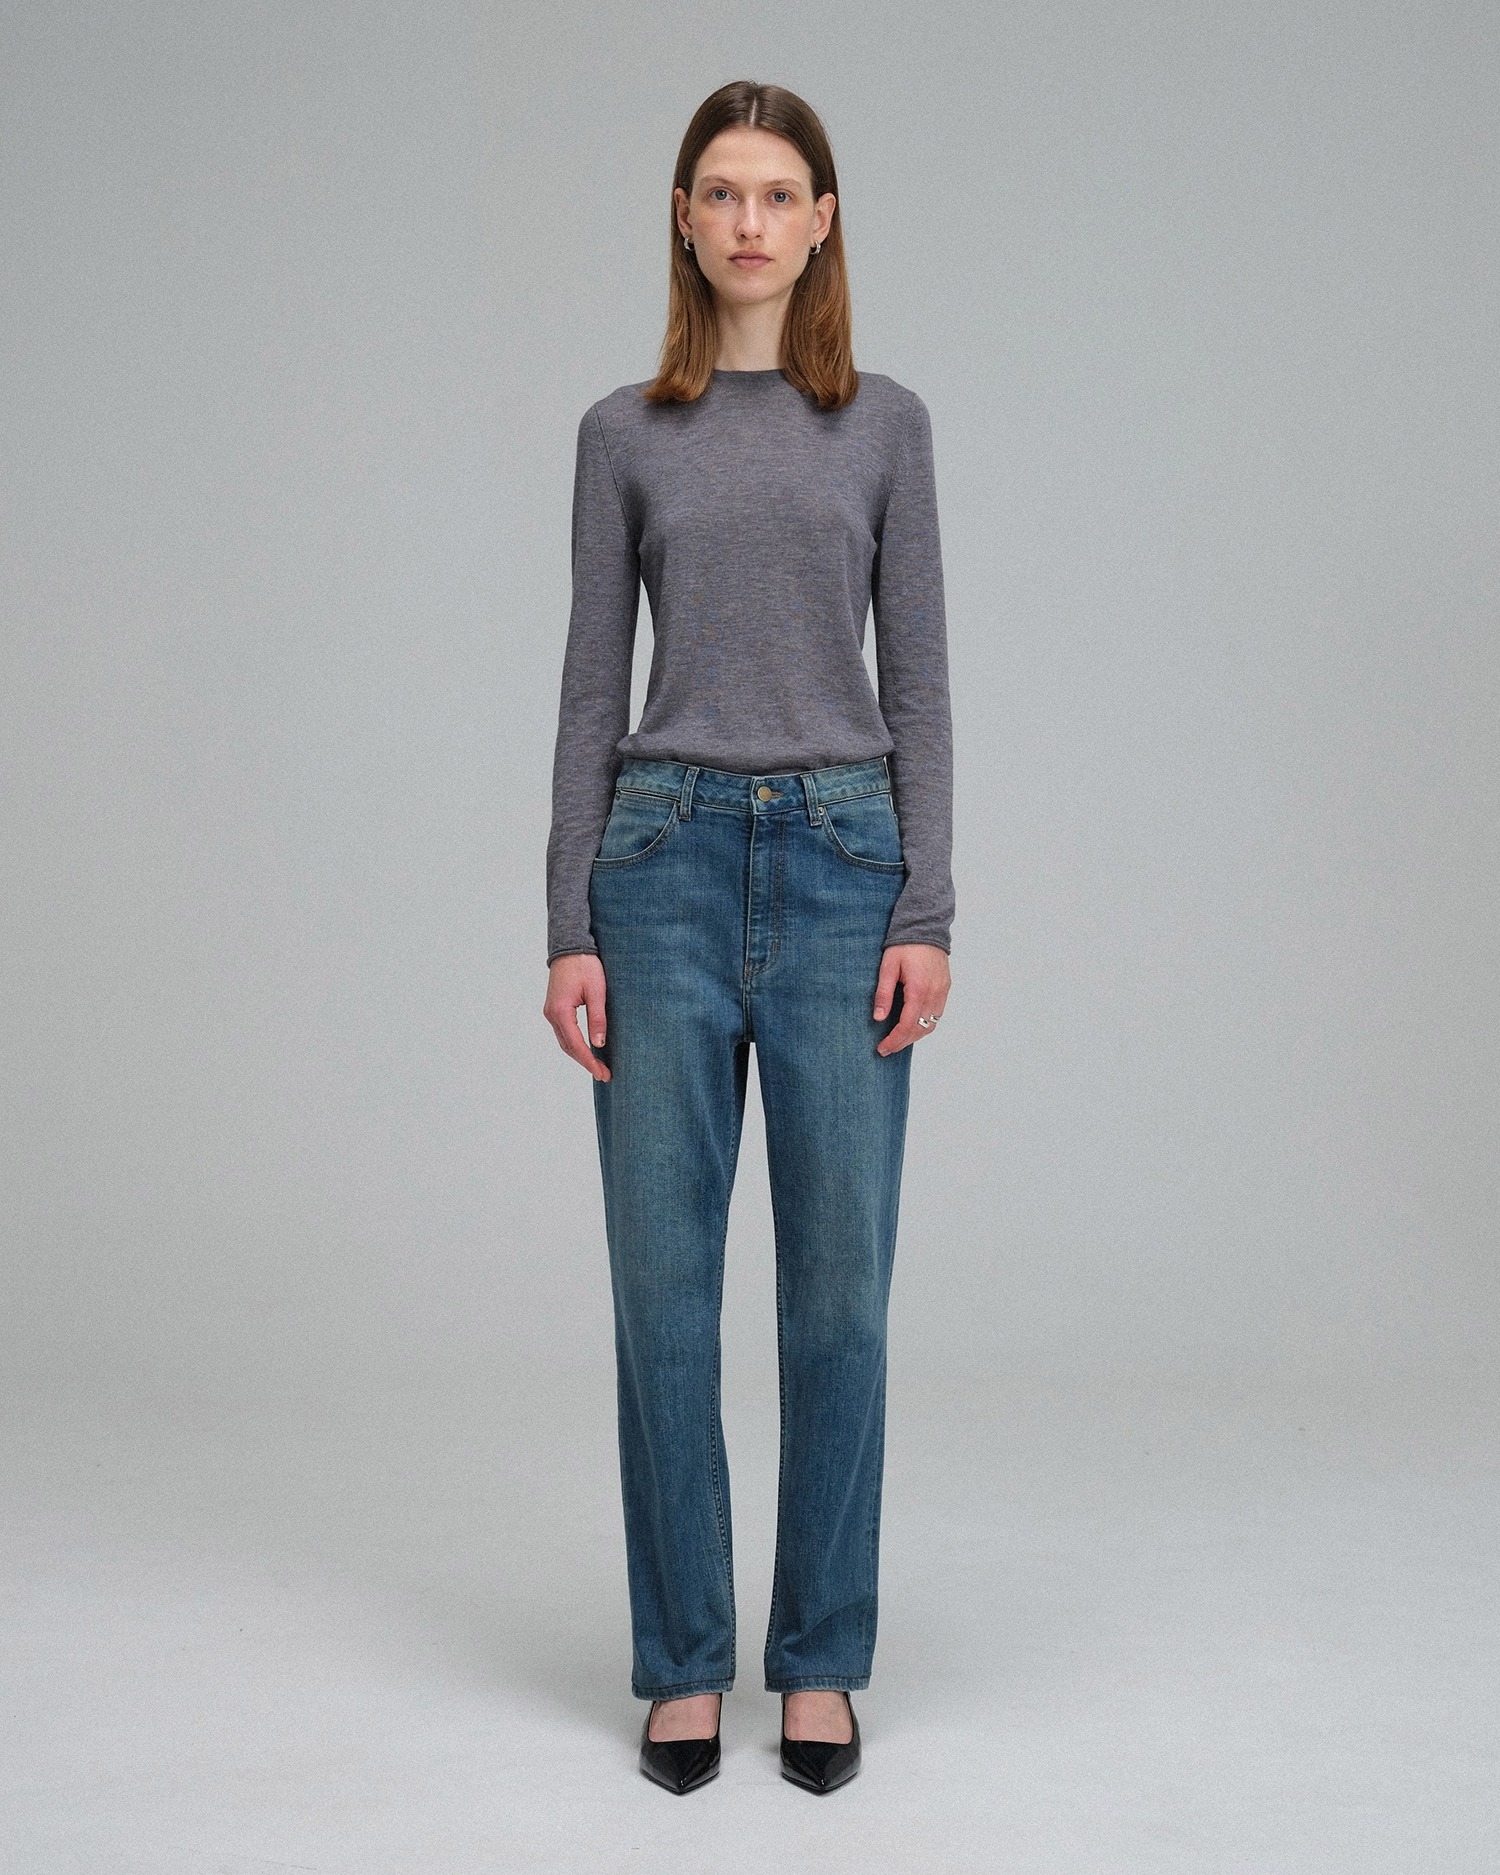 Essential Round Knit Jersey - Melange Grey